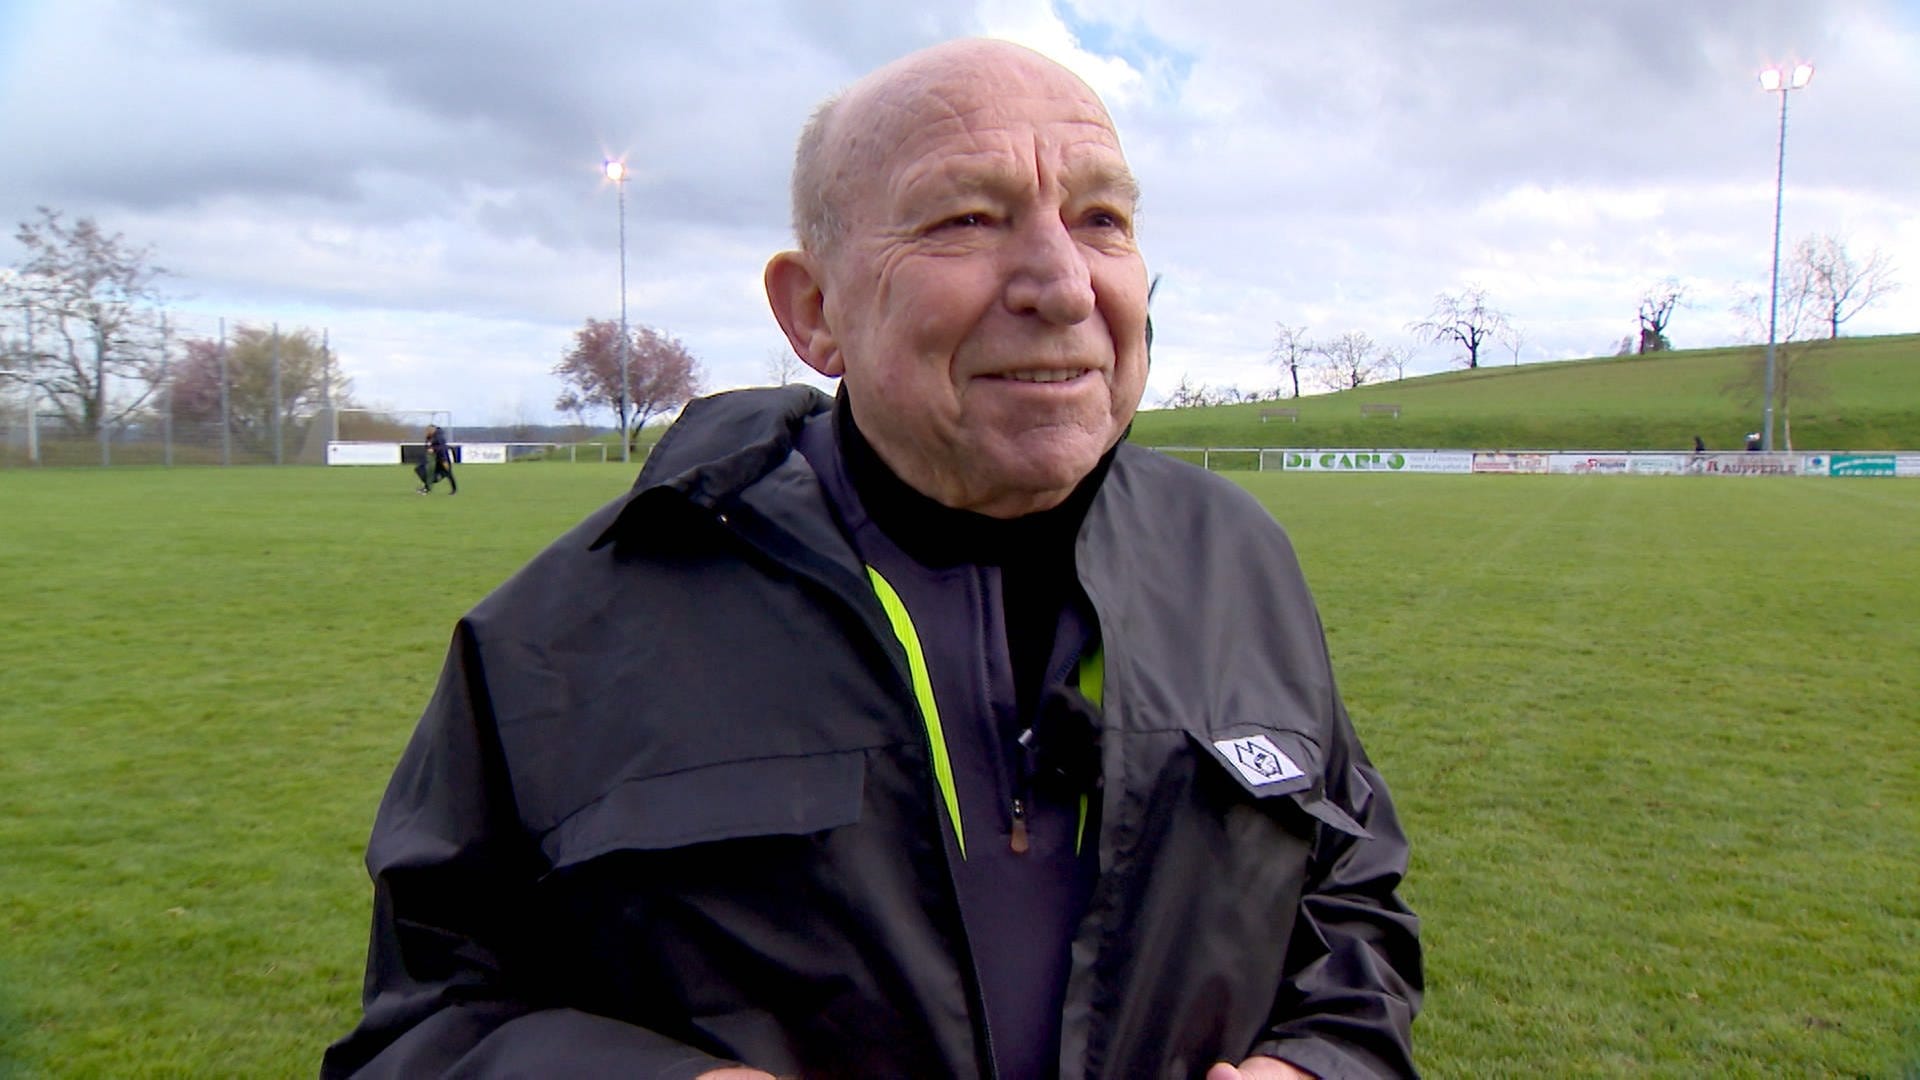 Seit 58 Jahren Schiedsrichter: Deshalb denkt Umberto mit 83 Jahren noch nicht an den Ruhestand